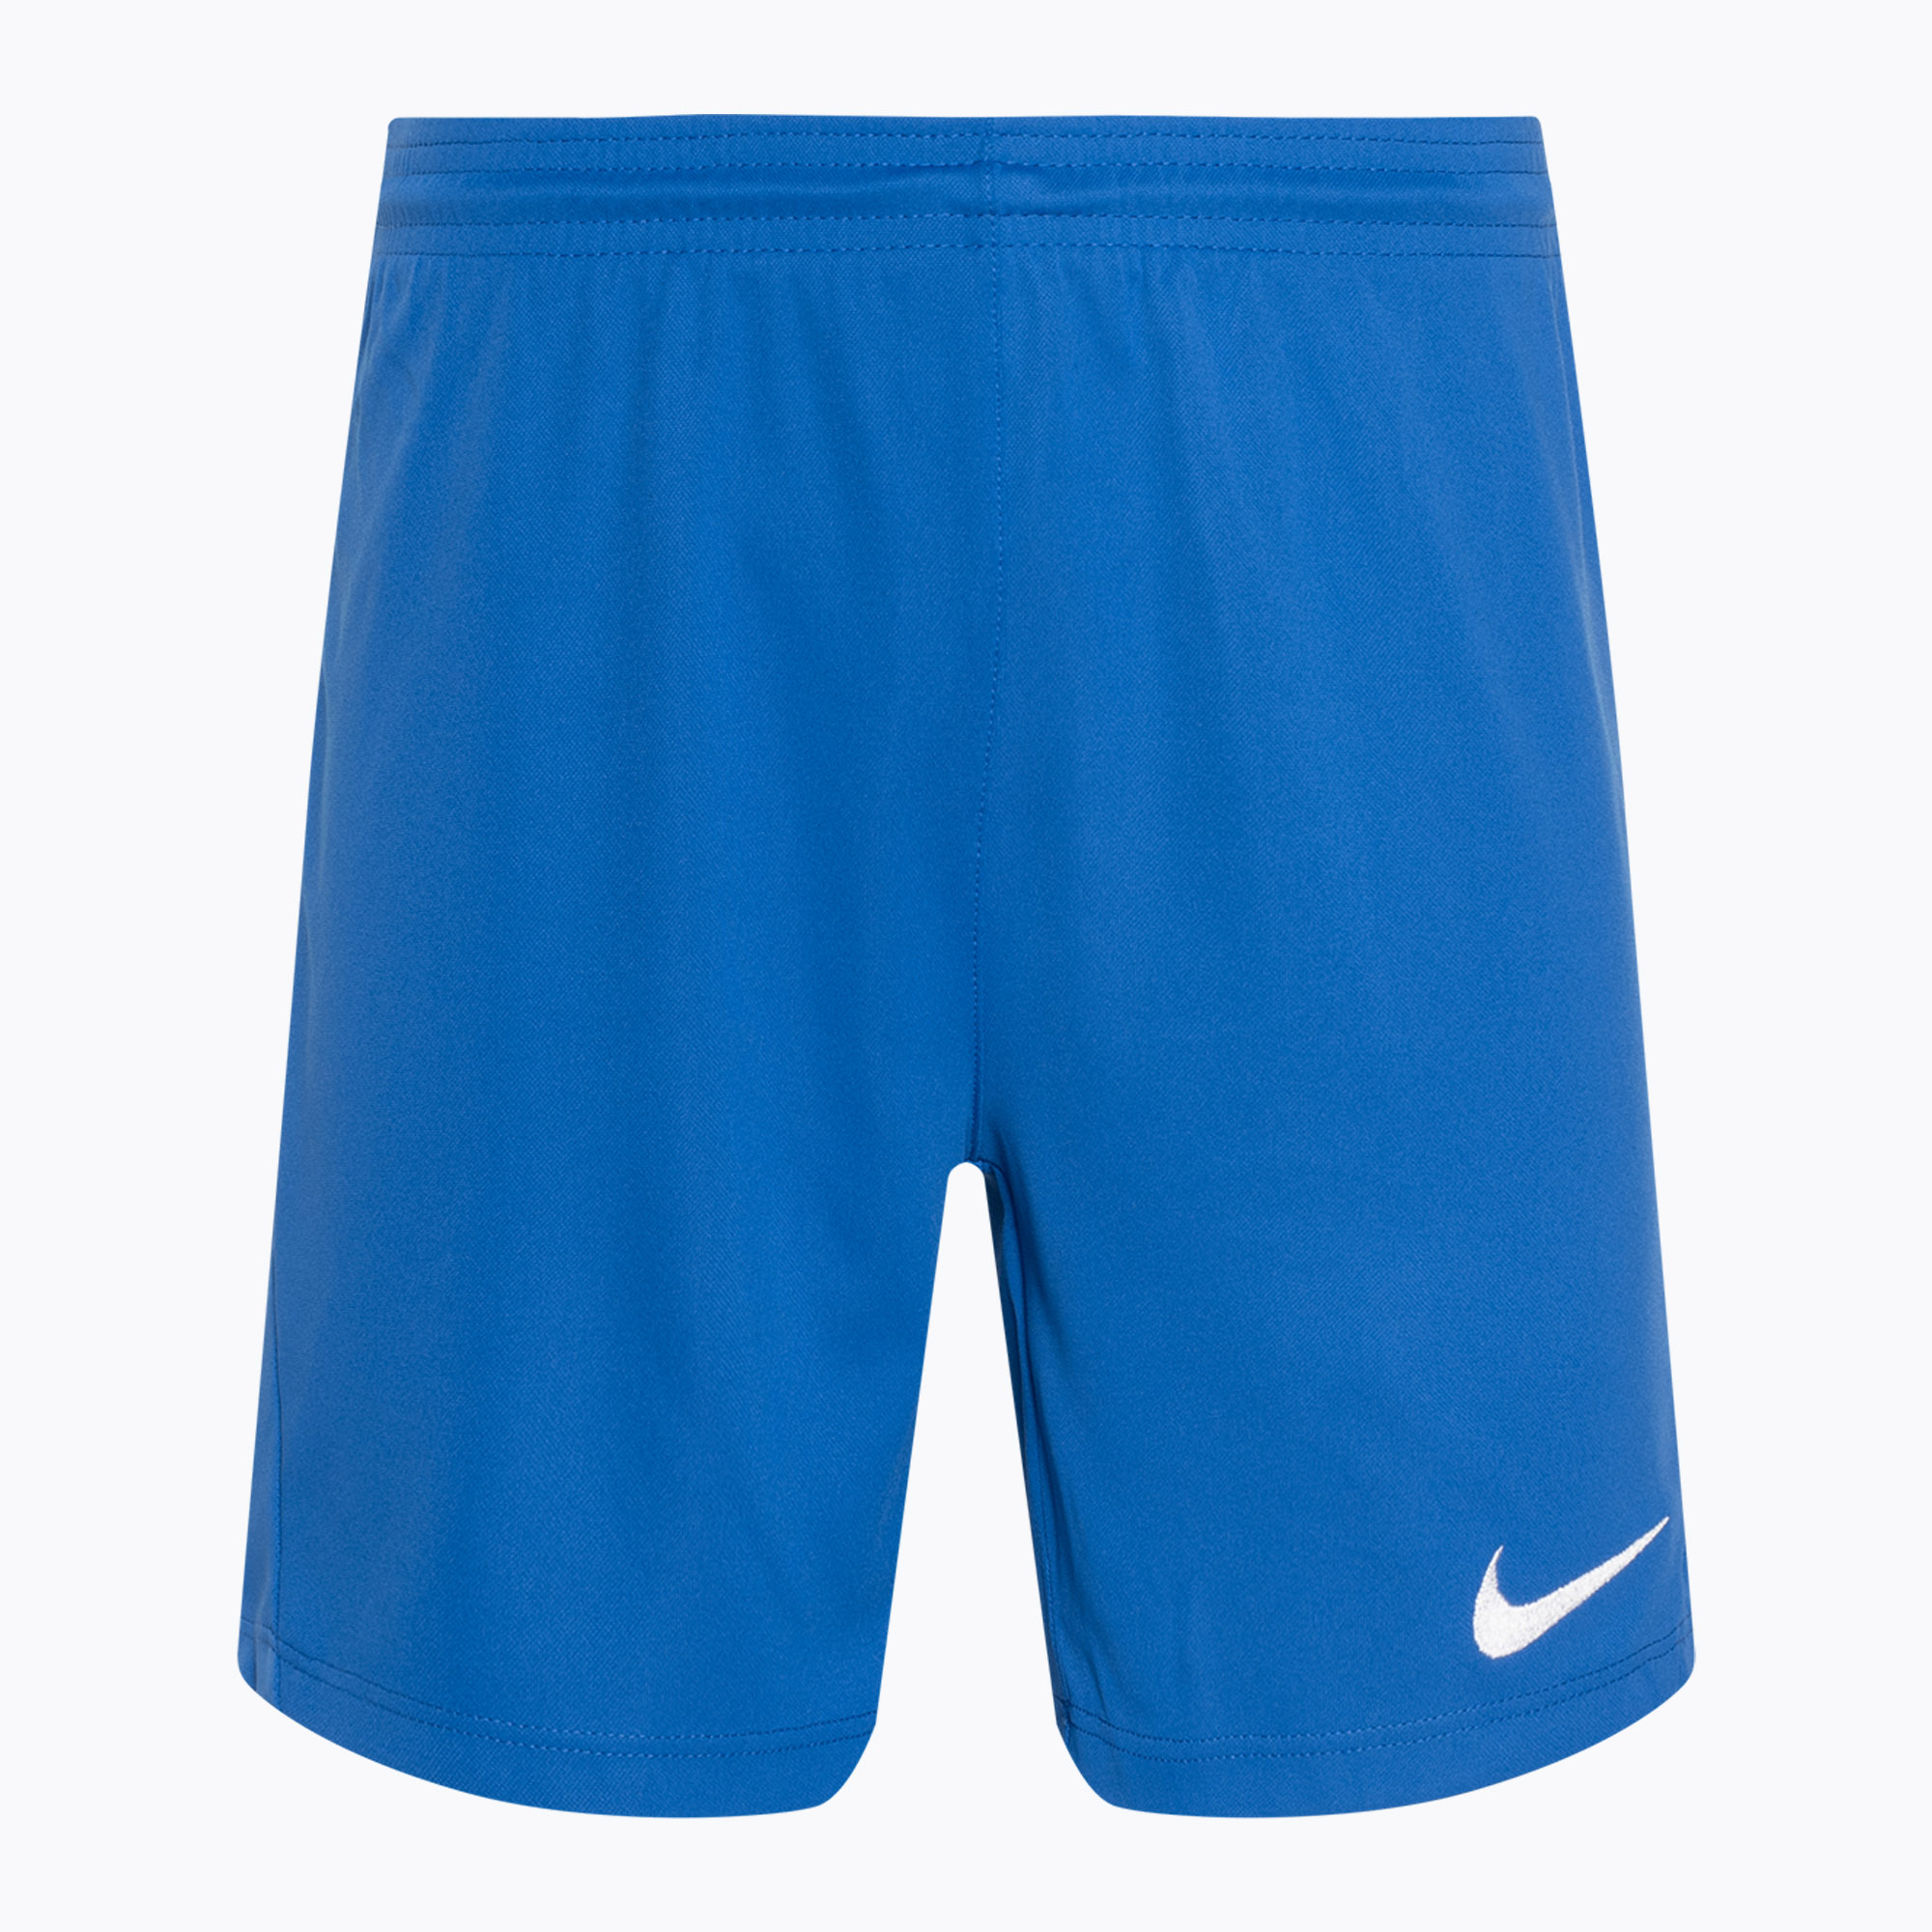 Dámske futbalové šortky Nike Dri-FIT Park III Knit royal blue/white